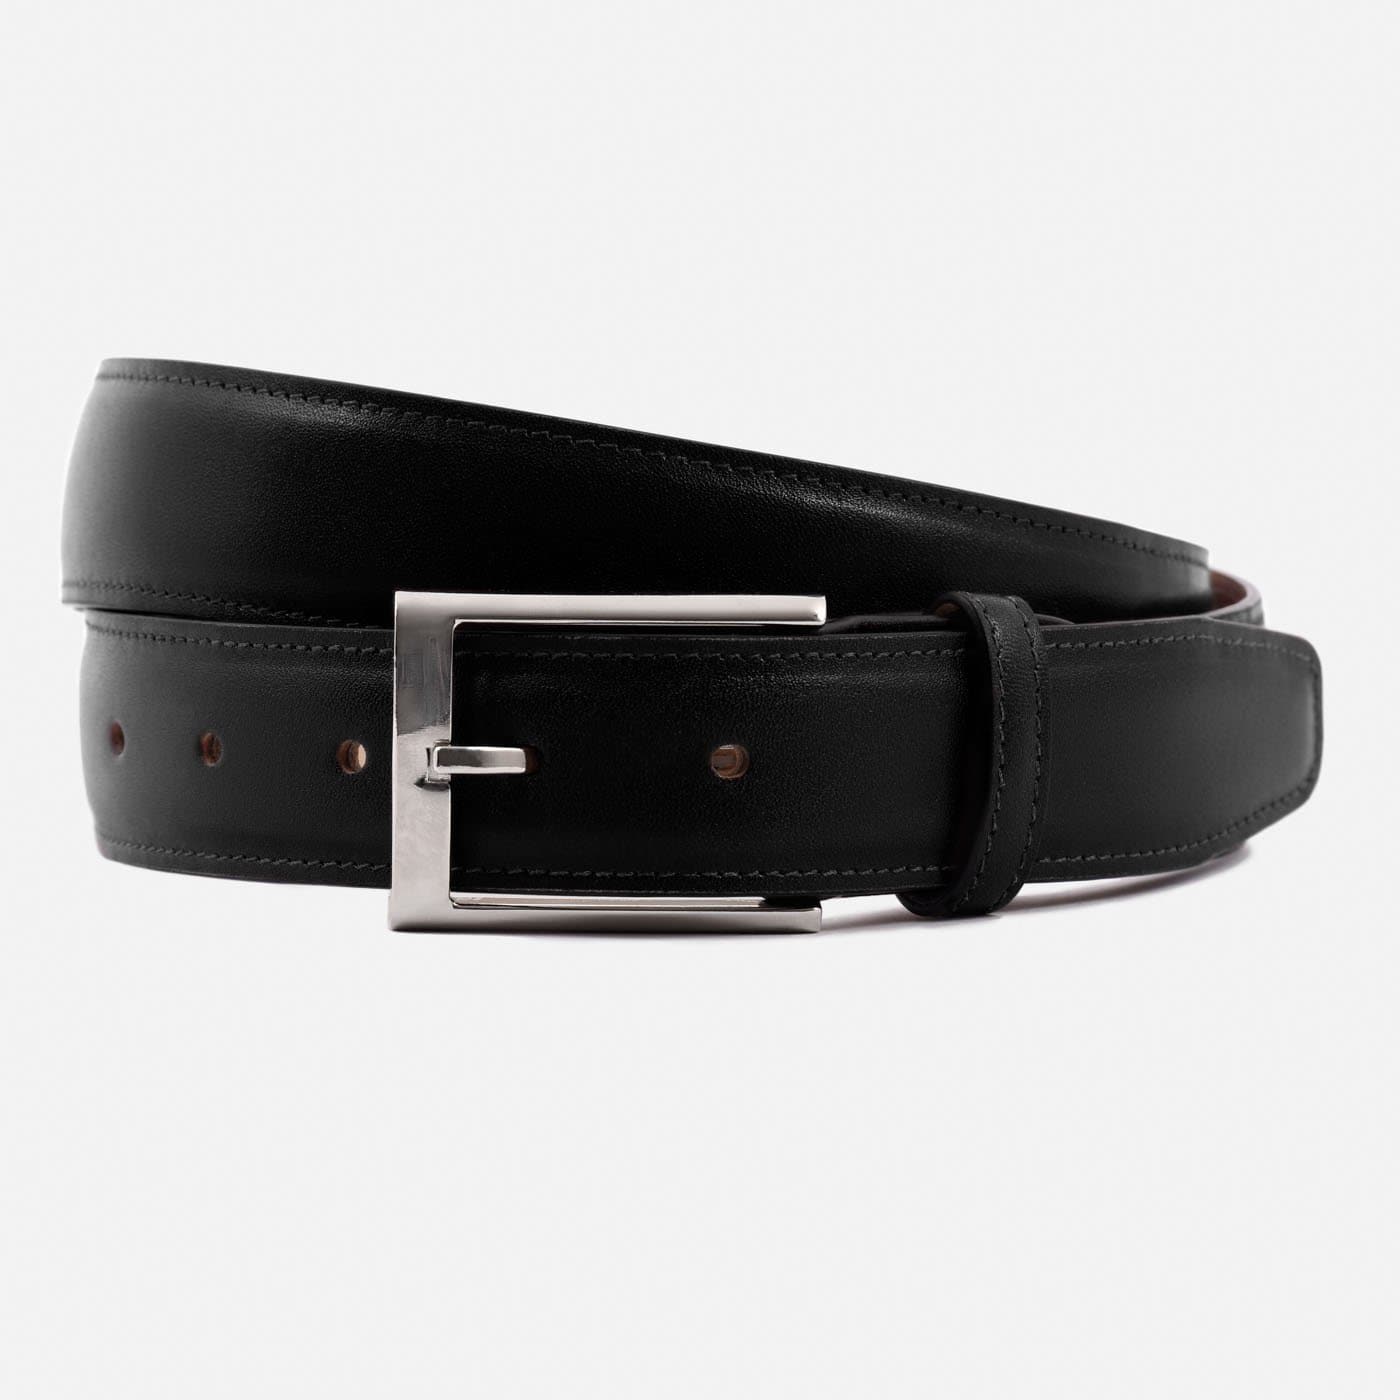 Designer belts men high quality letter buckle off white belt